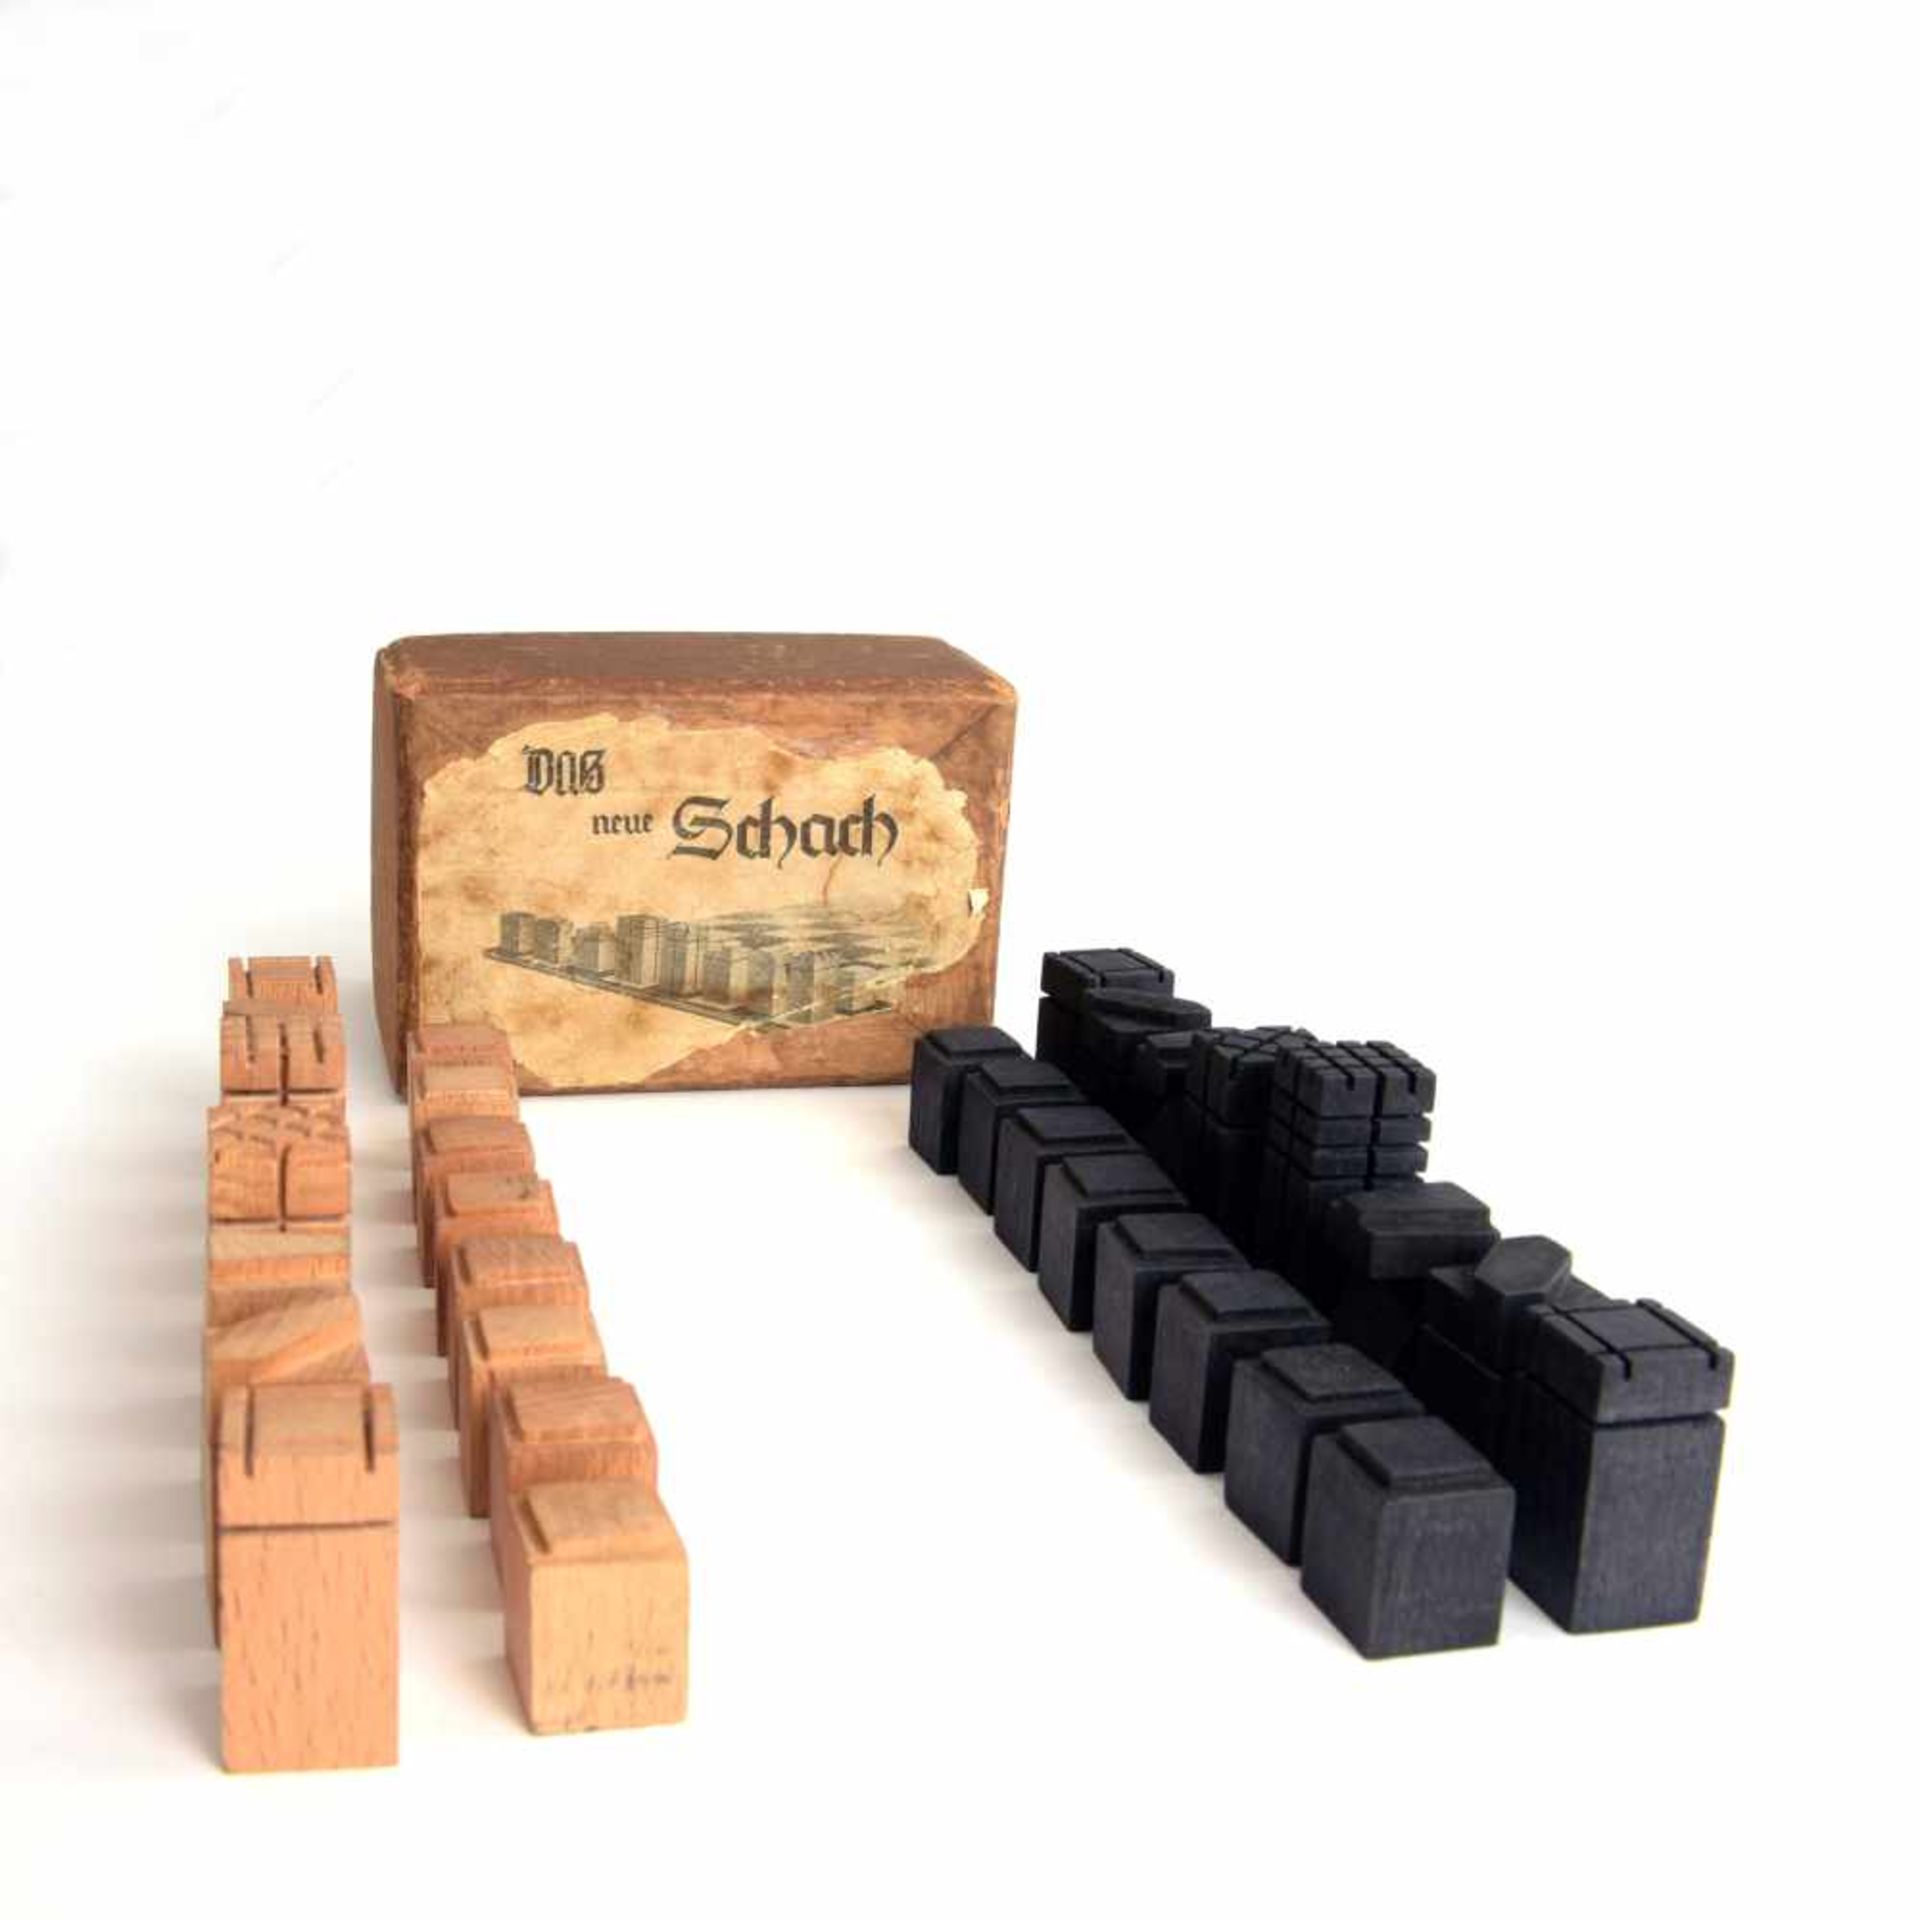 Deutschland. Schachspiel 'Das neue Schach', um 1925 H. 2,5-5,4 cm. Holz, natur bzw. schwarz gebeizt. - Bild 7 aus 9